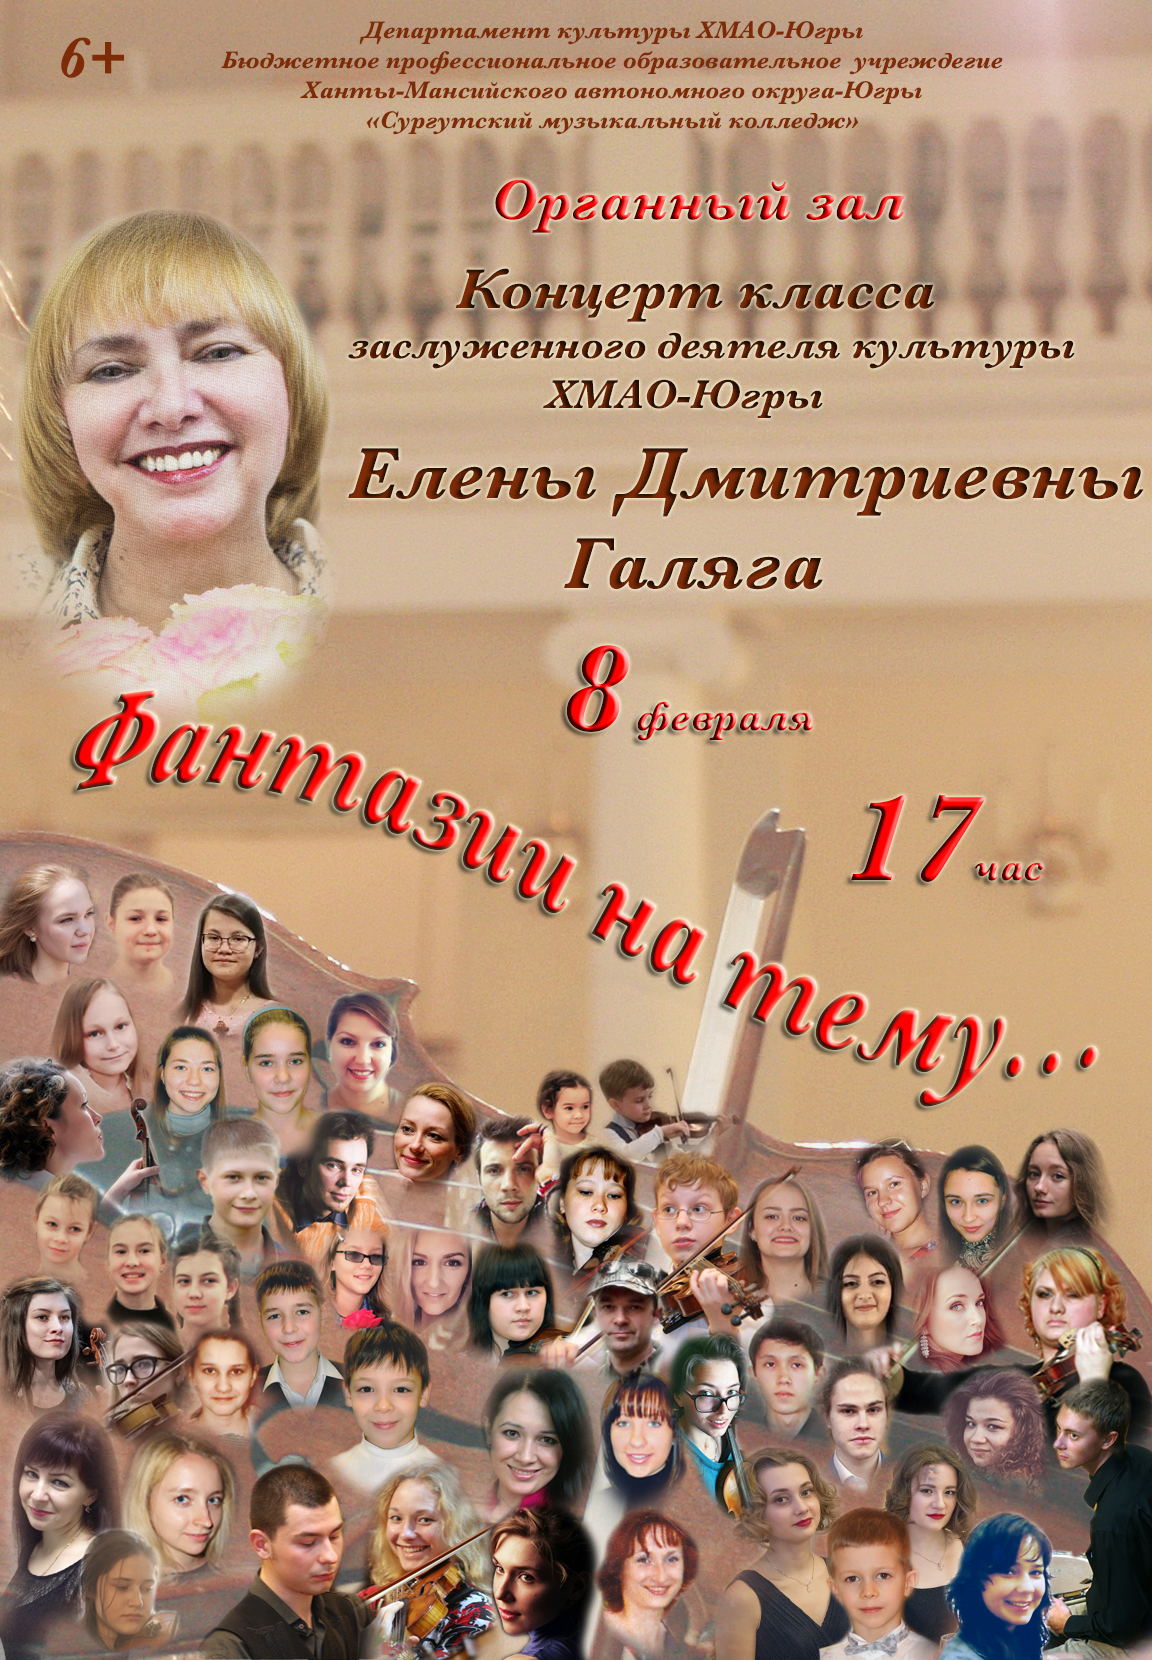 В сургутском музколледже отметят 35-летие педагогической деятельности Елены Галяги 